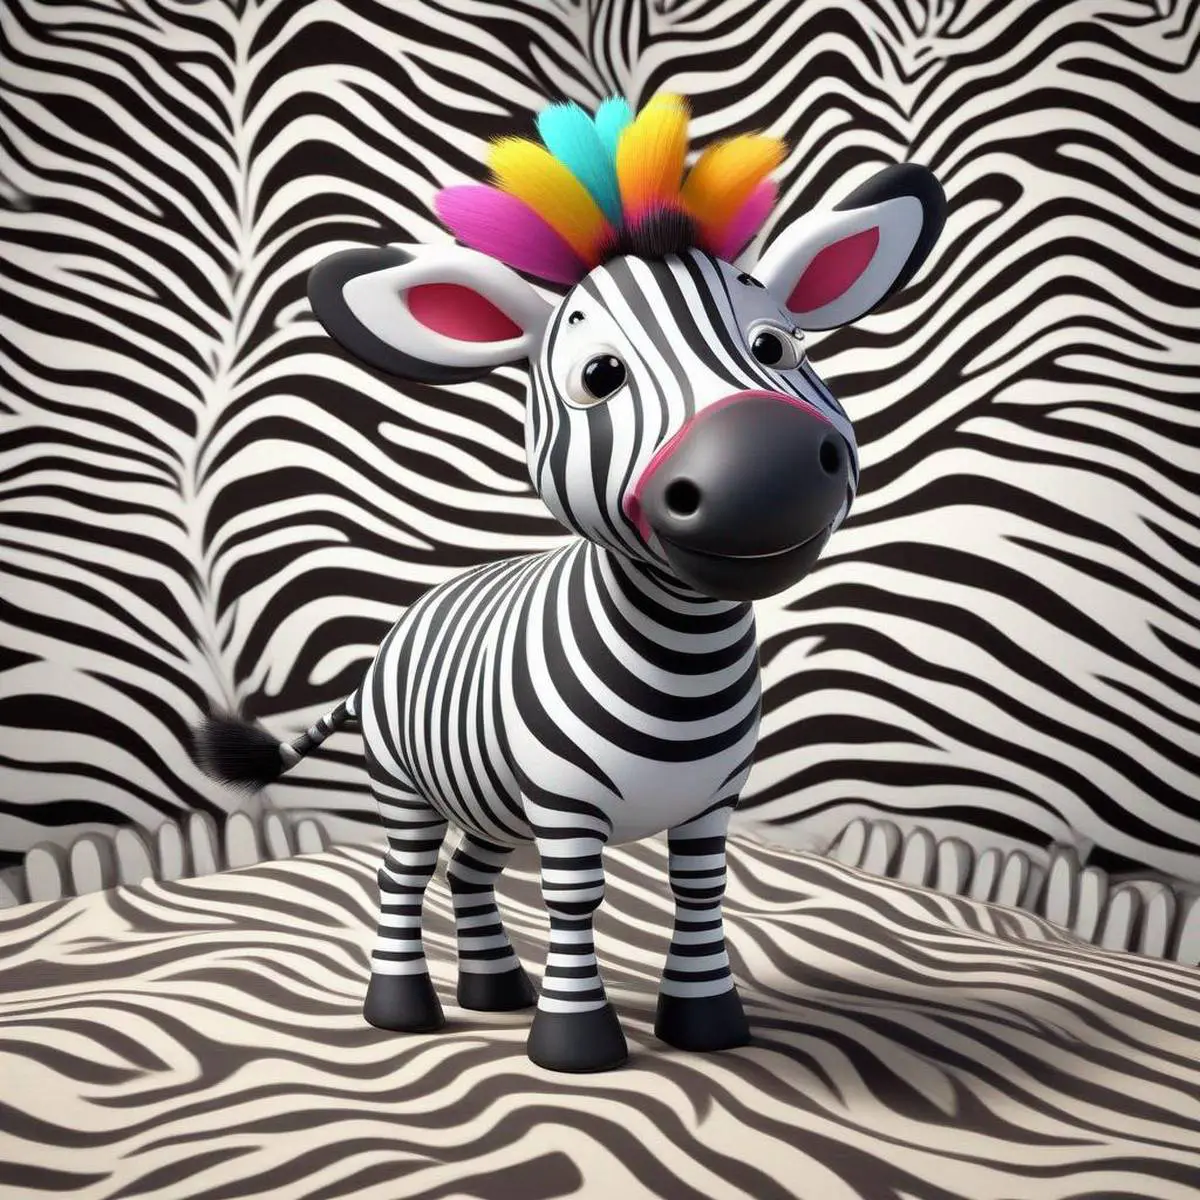 Zebra puns